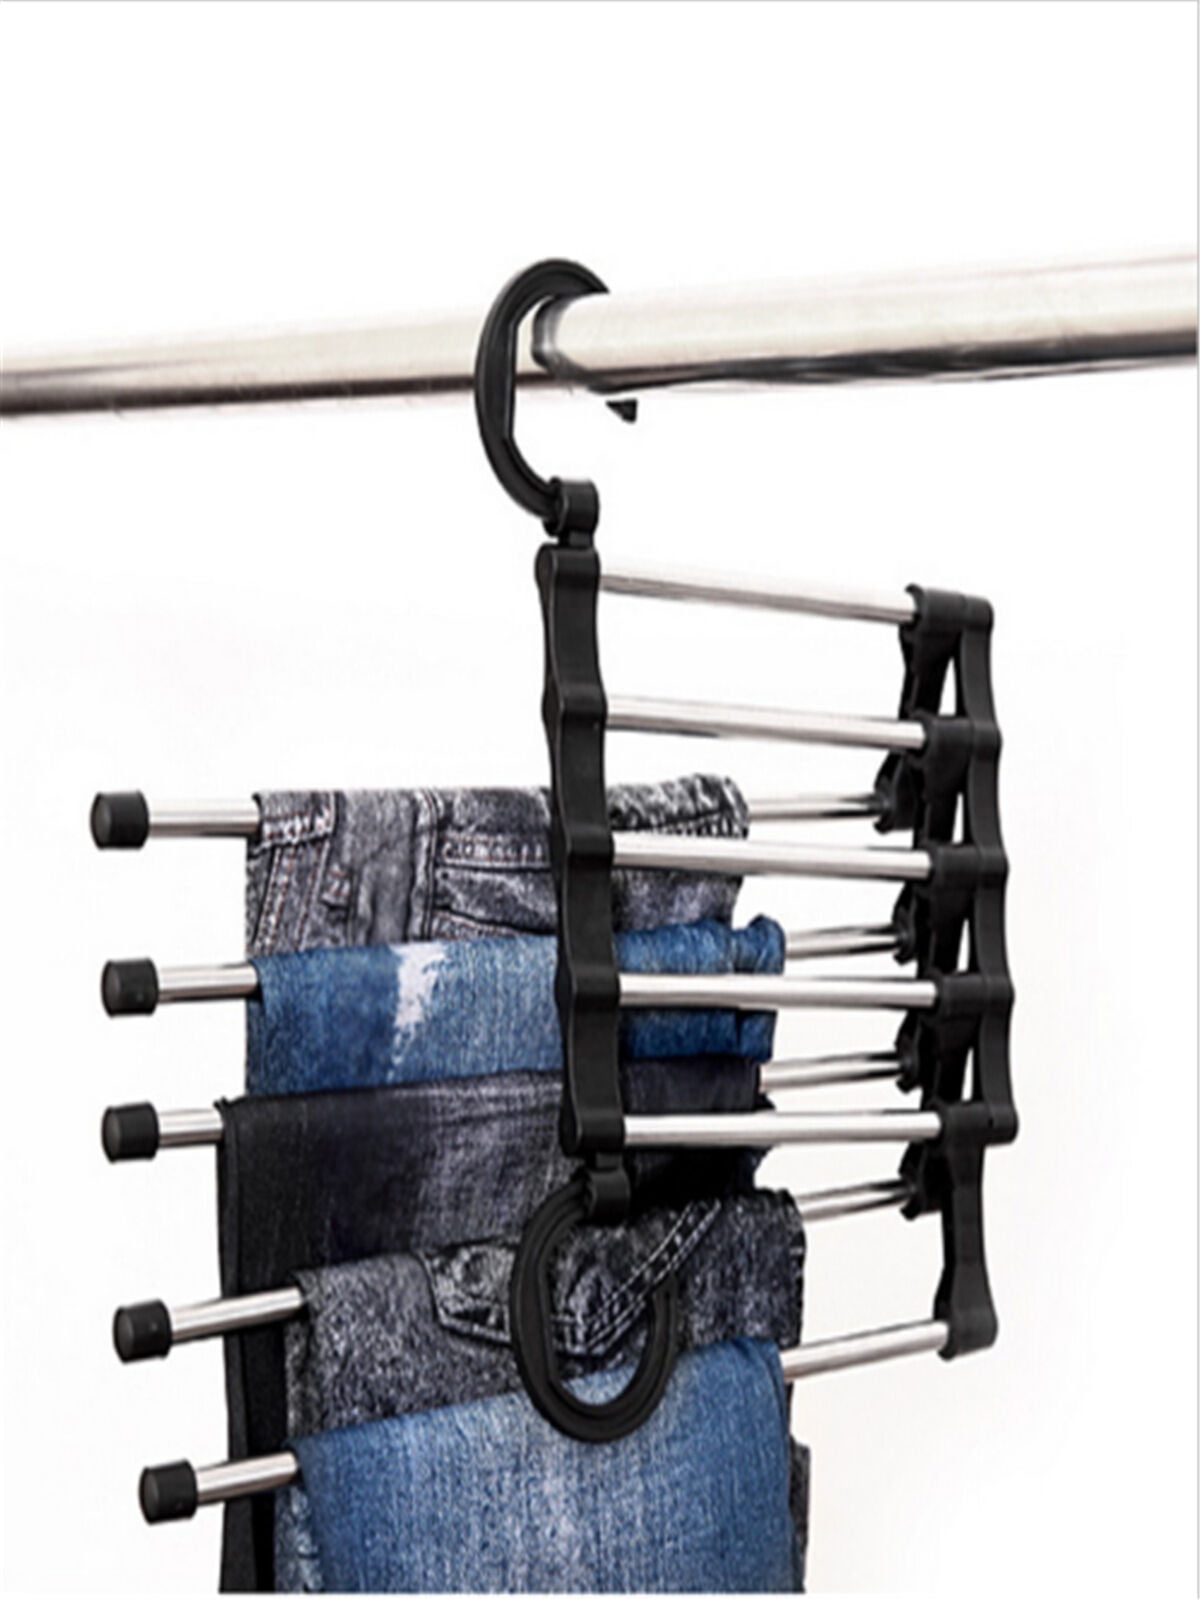 Magic Hanger Pants rack shelves Stainless Steel Multi-functional Wardrobe 2019 